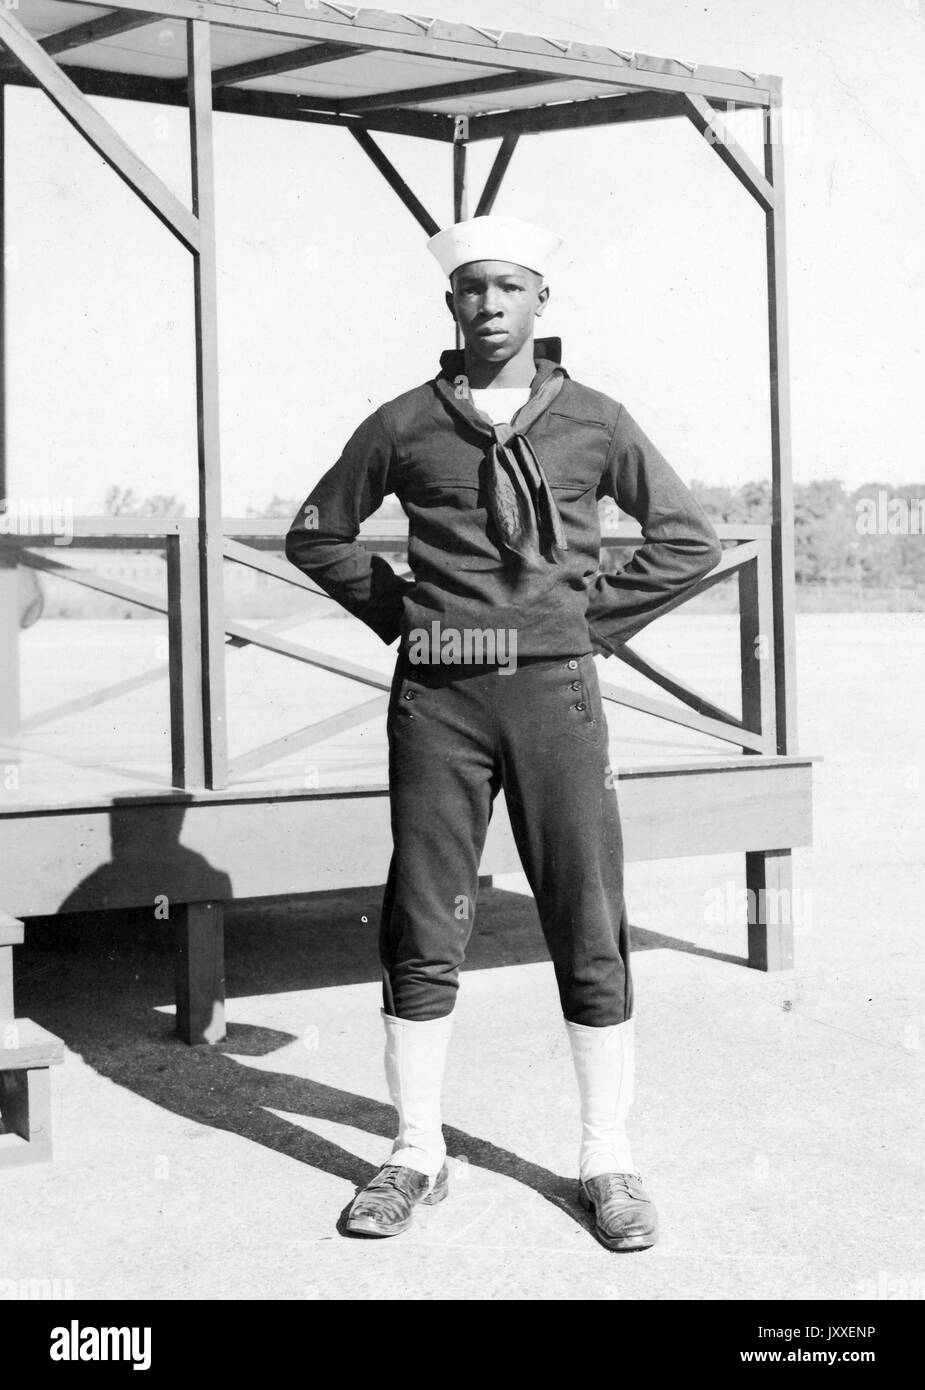 Portrait einer afrikanischen amerikanischen US Navy Sailor stand vor einer hölzernen Plattform, er trägt einen dunklen Sailor uniform und einem hellen Sailor hat, die Arme sind gebeugt und seine Hände sind hinter seinem Rücken, 1920. Stockfoto